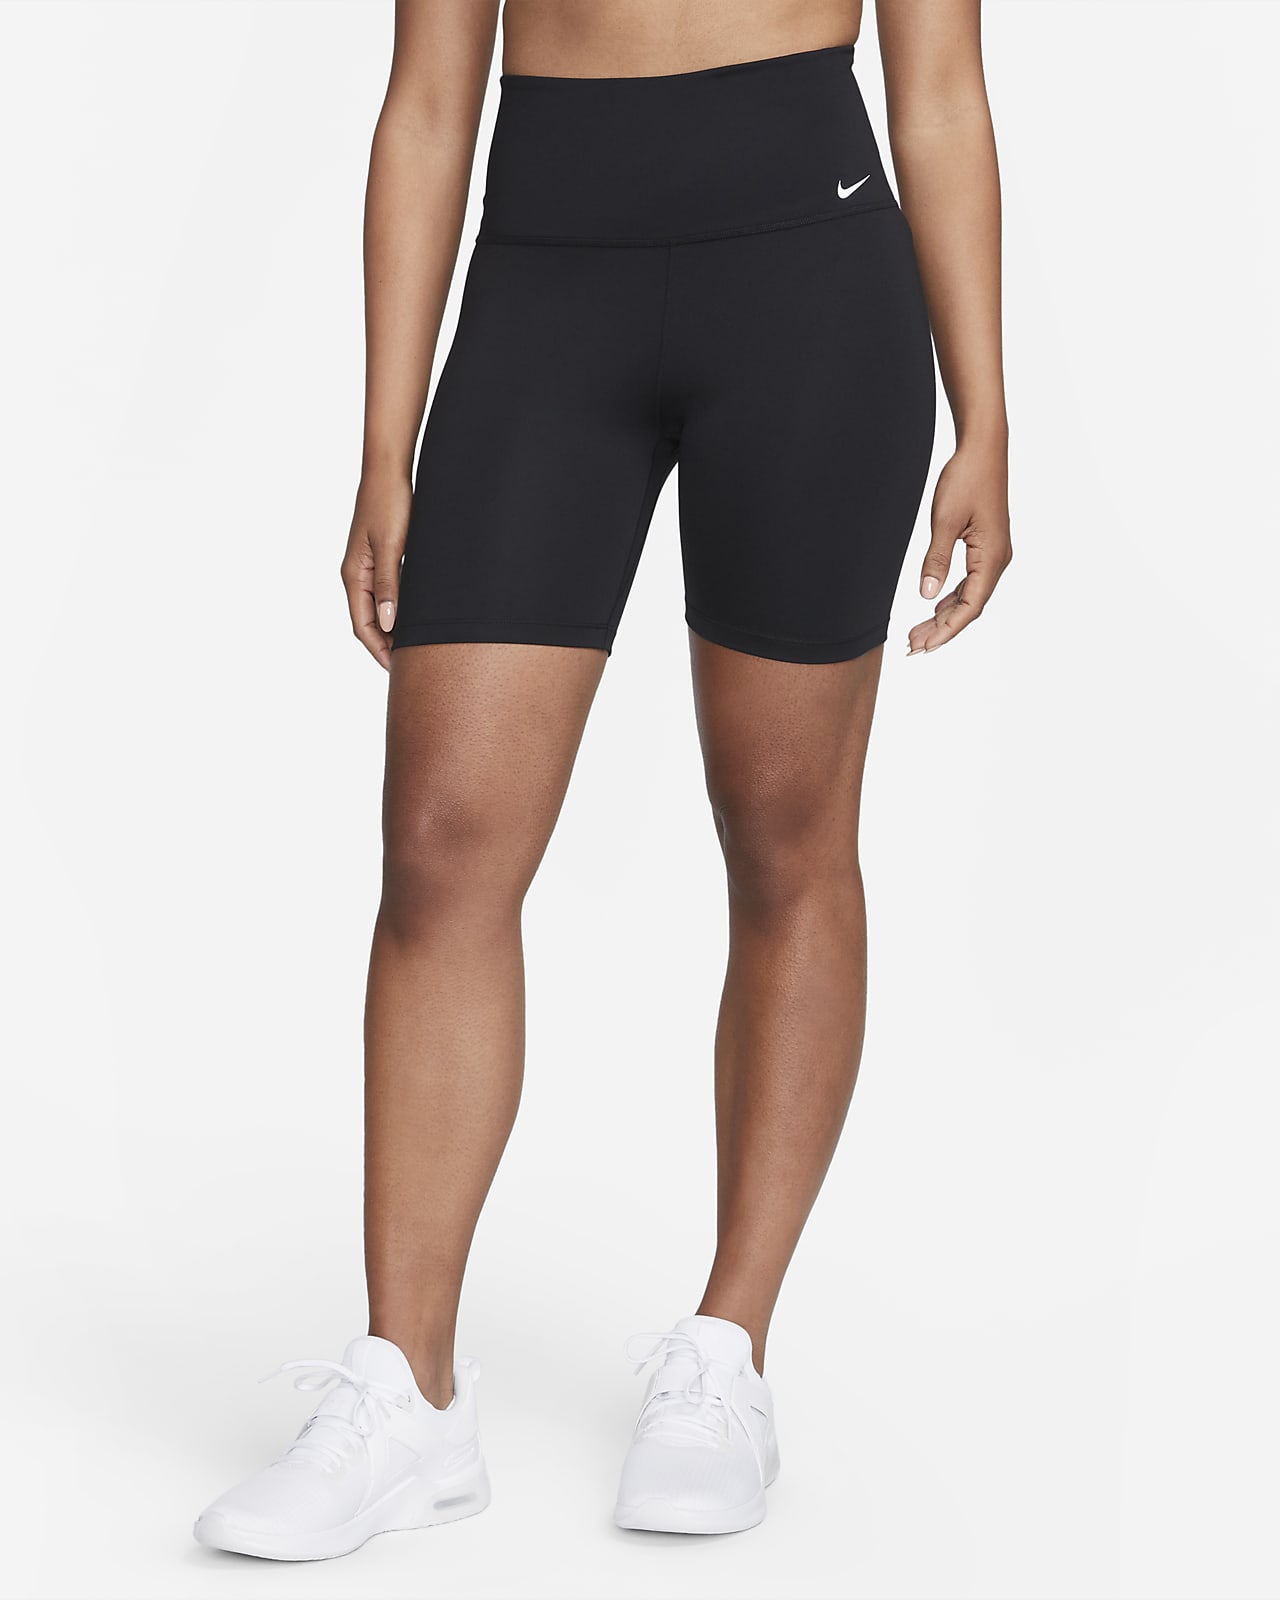 Nike Dri-FIT One magas derekú, 18 cm-es női kerékpáros rövidnadrág